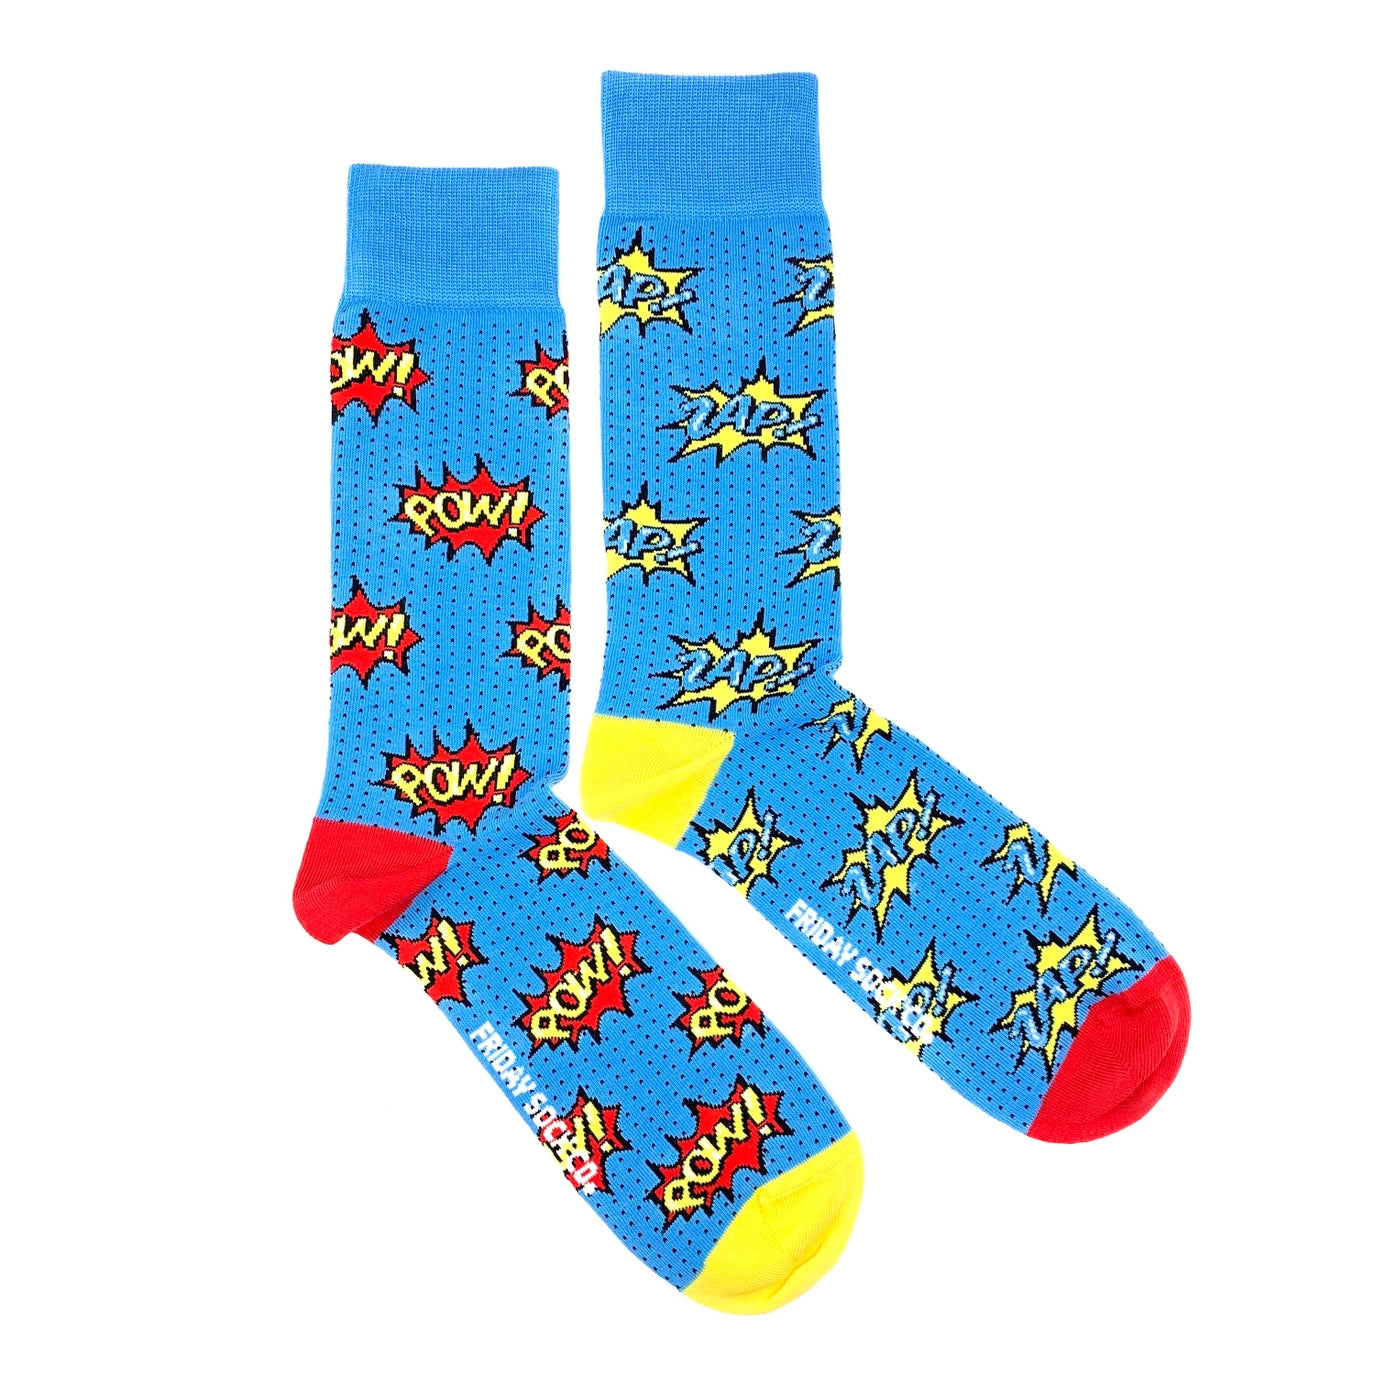 socks "Pow Zap"